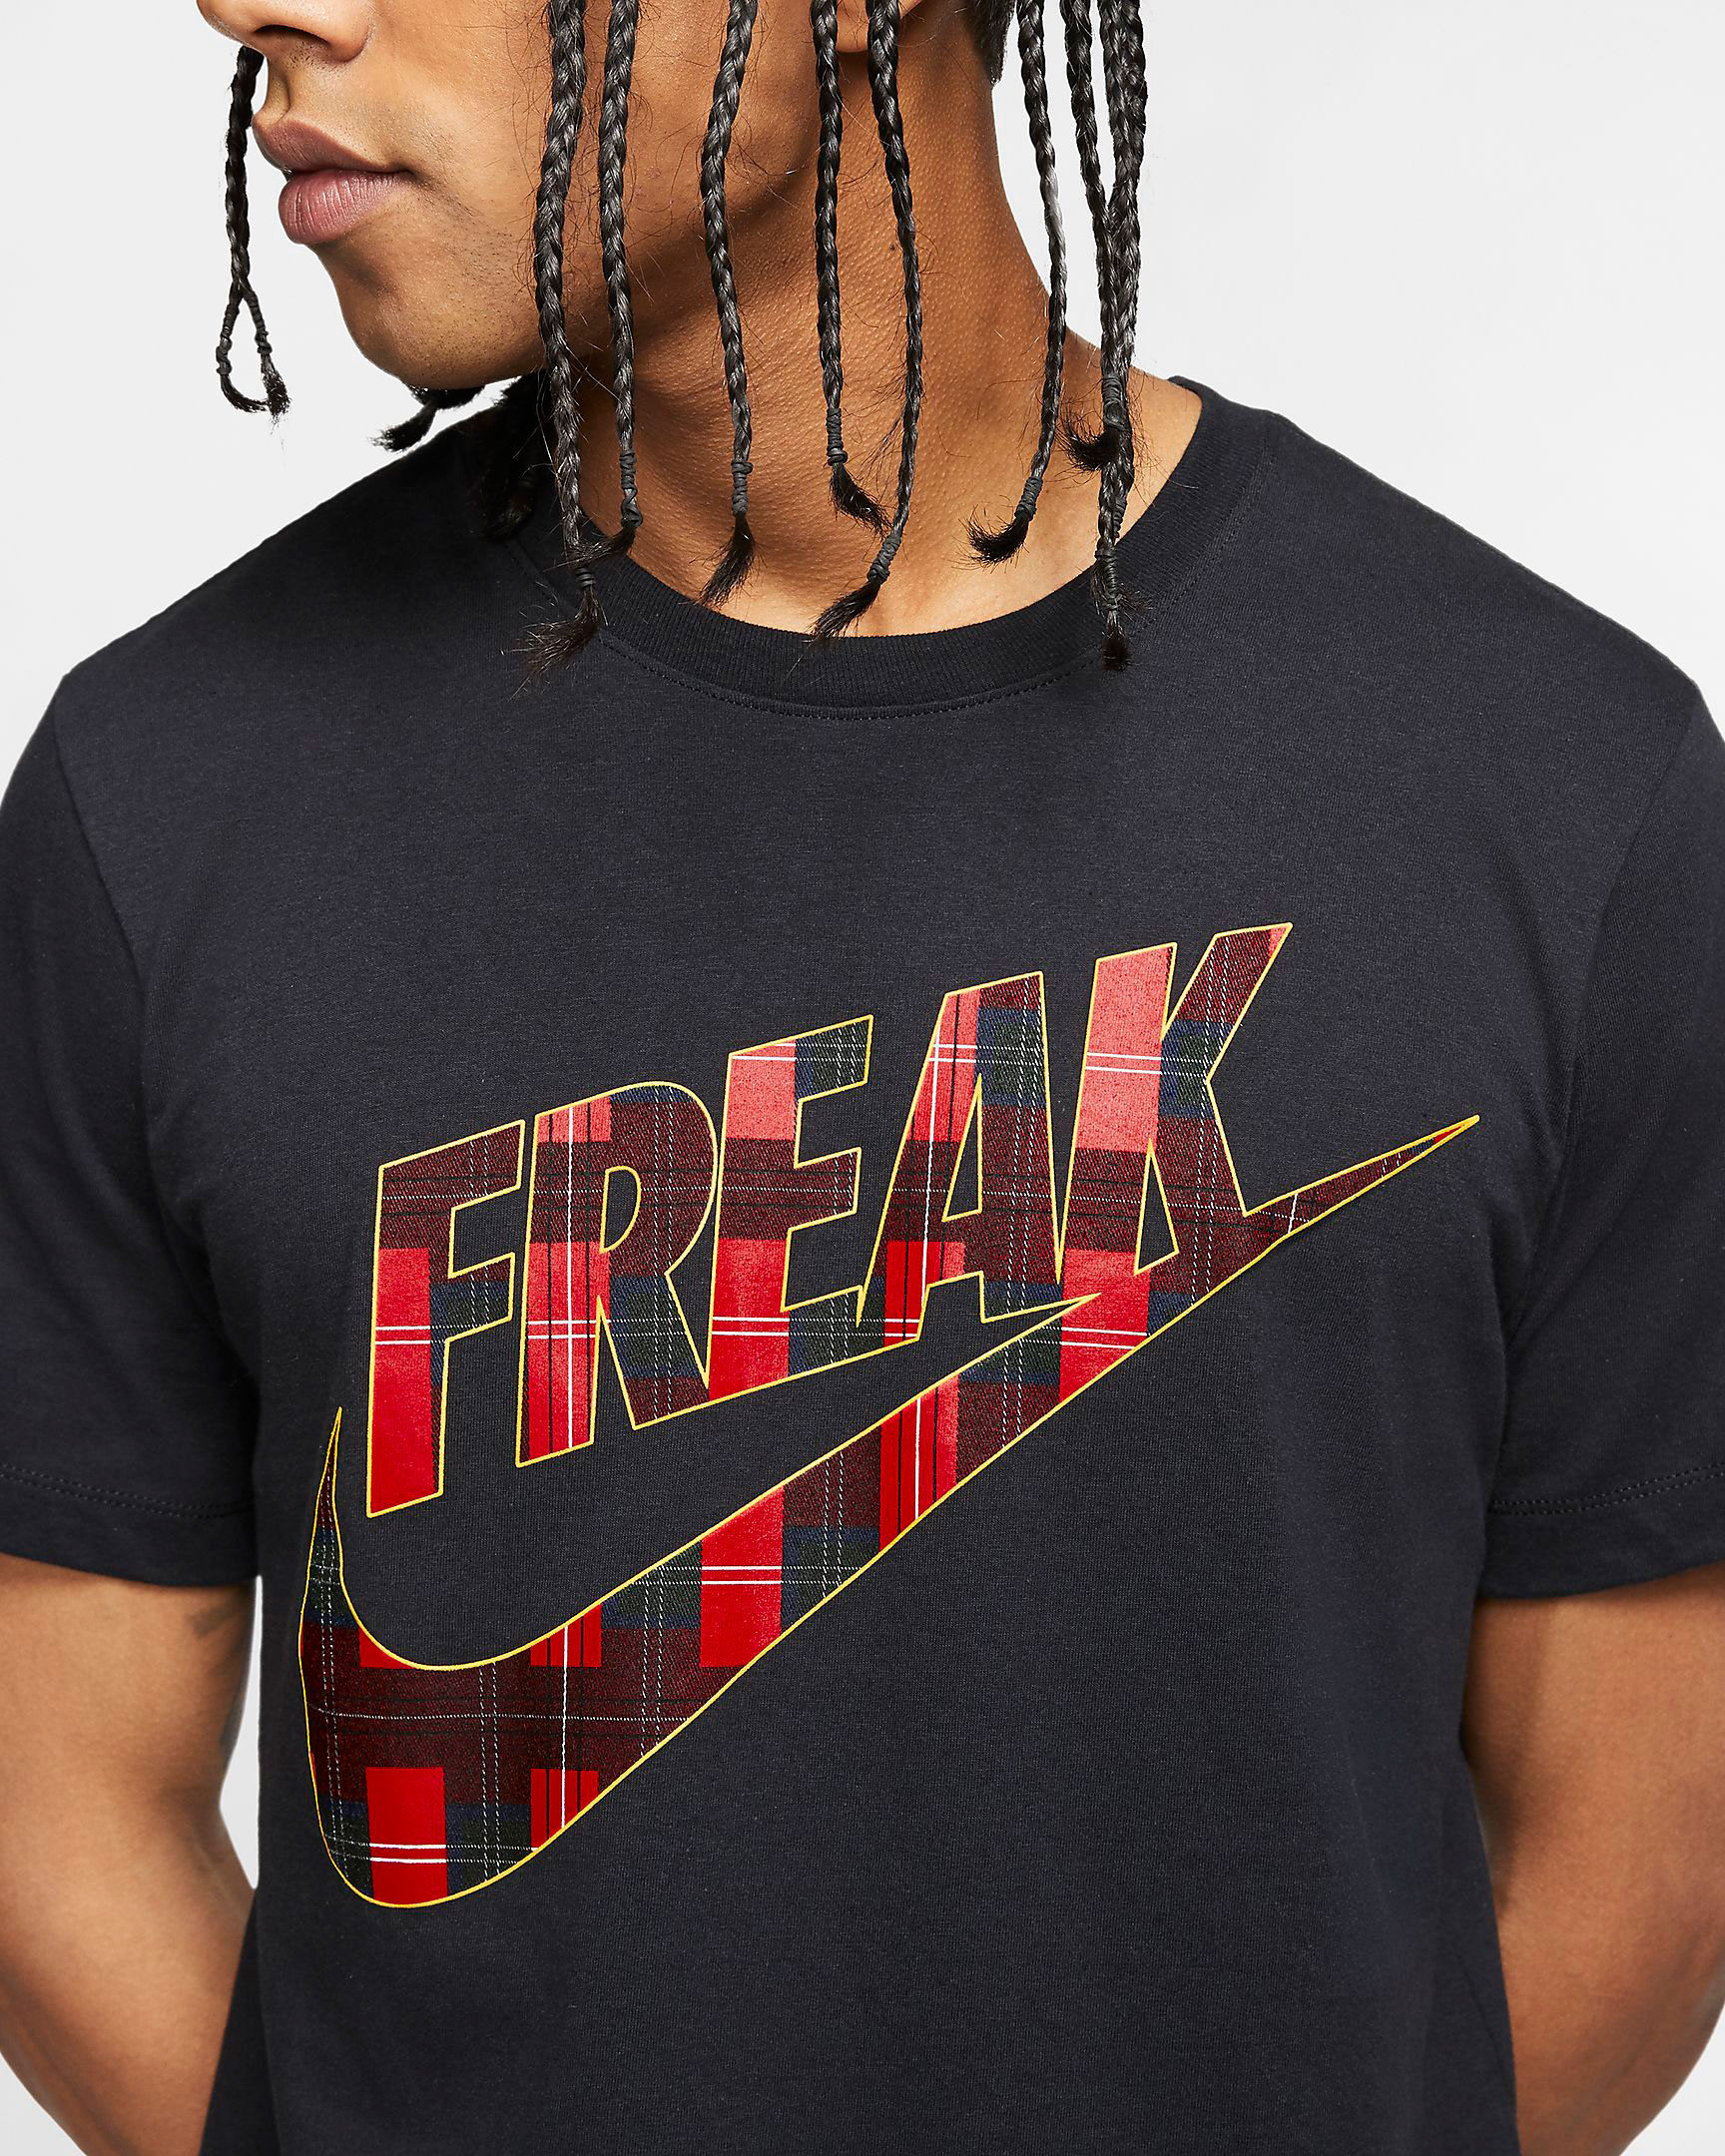 zoom freak shirt